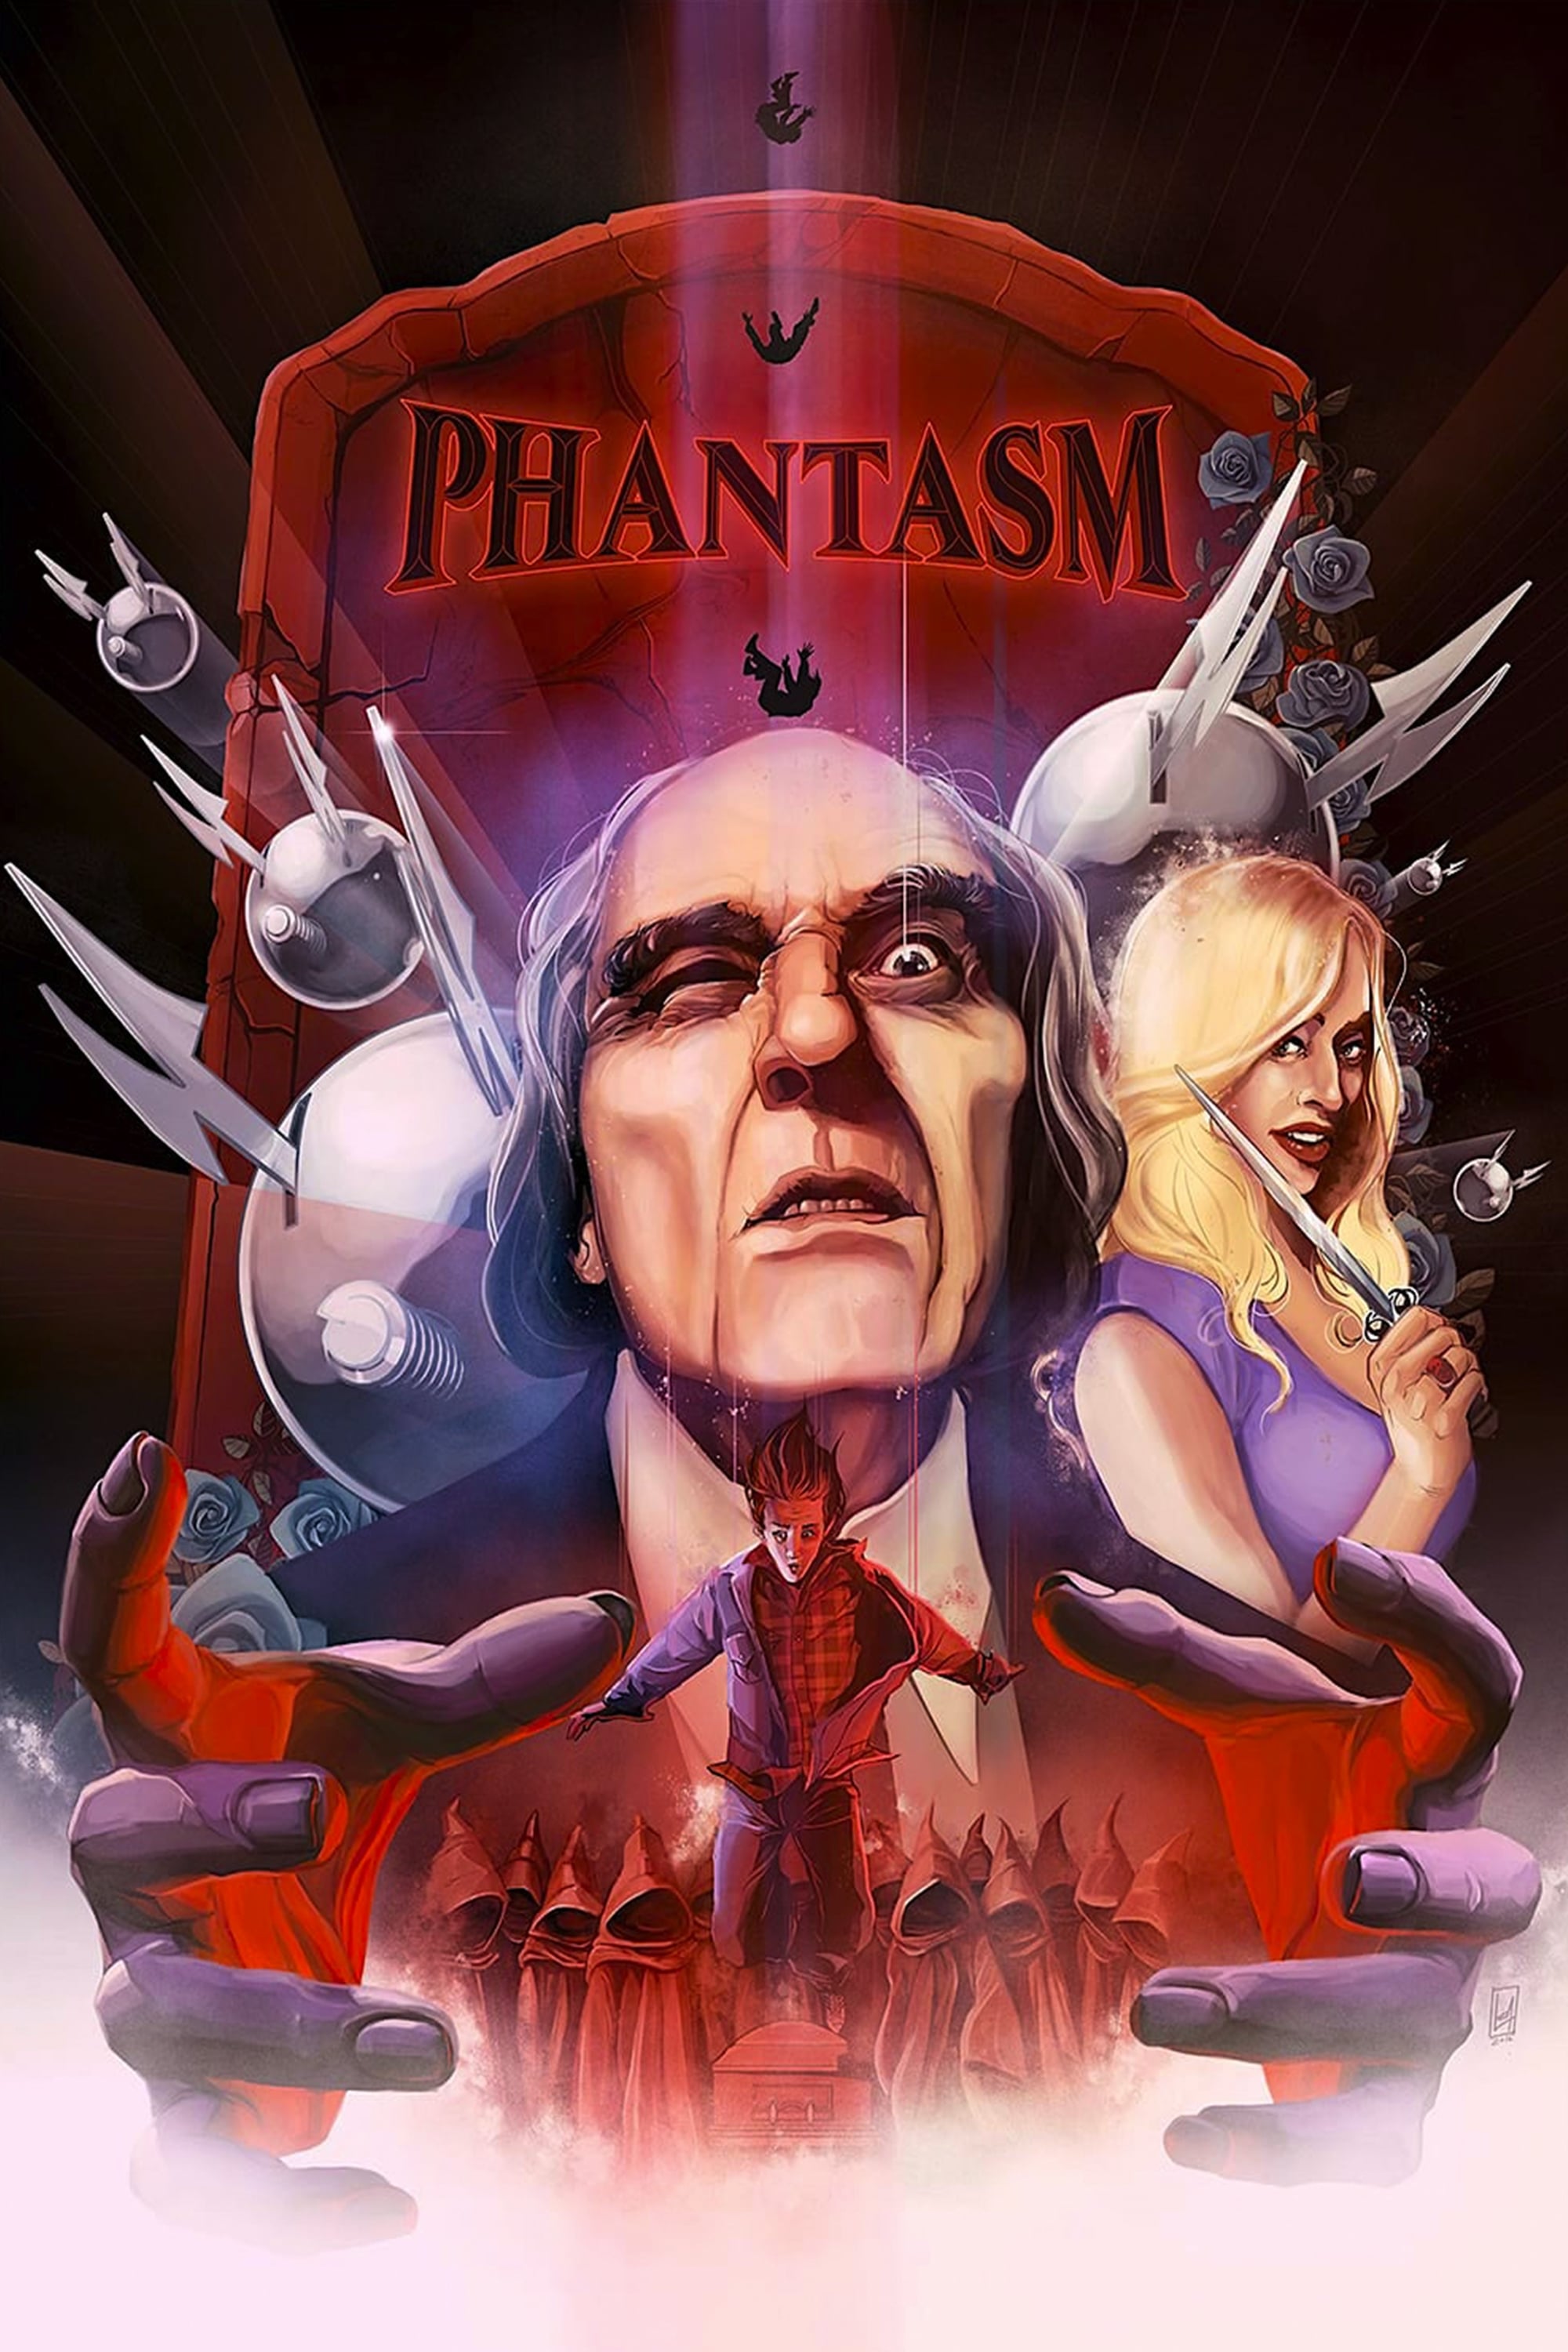 Phantasma (1979)